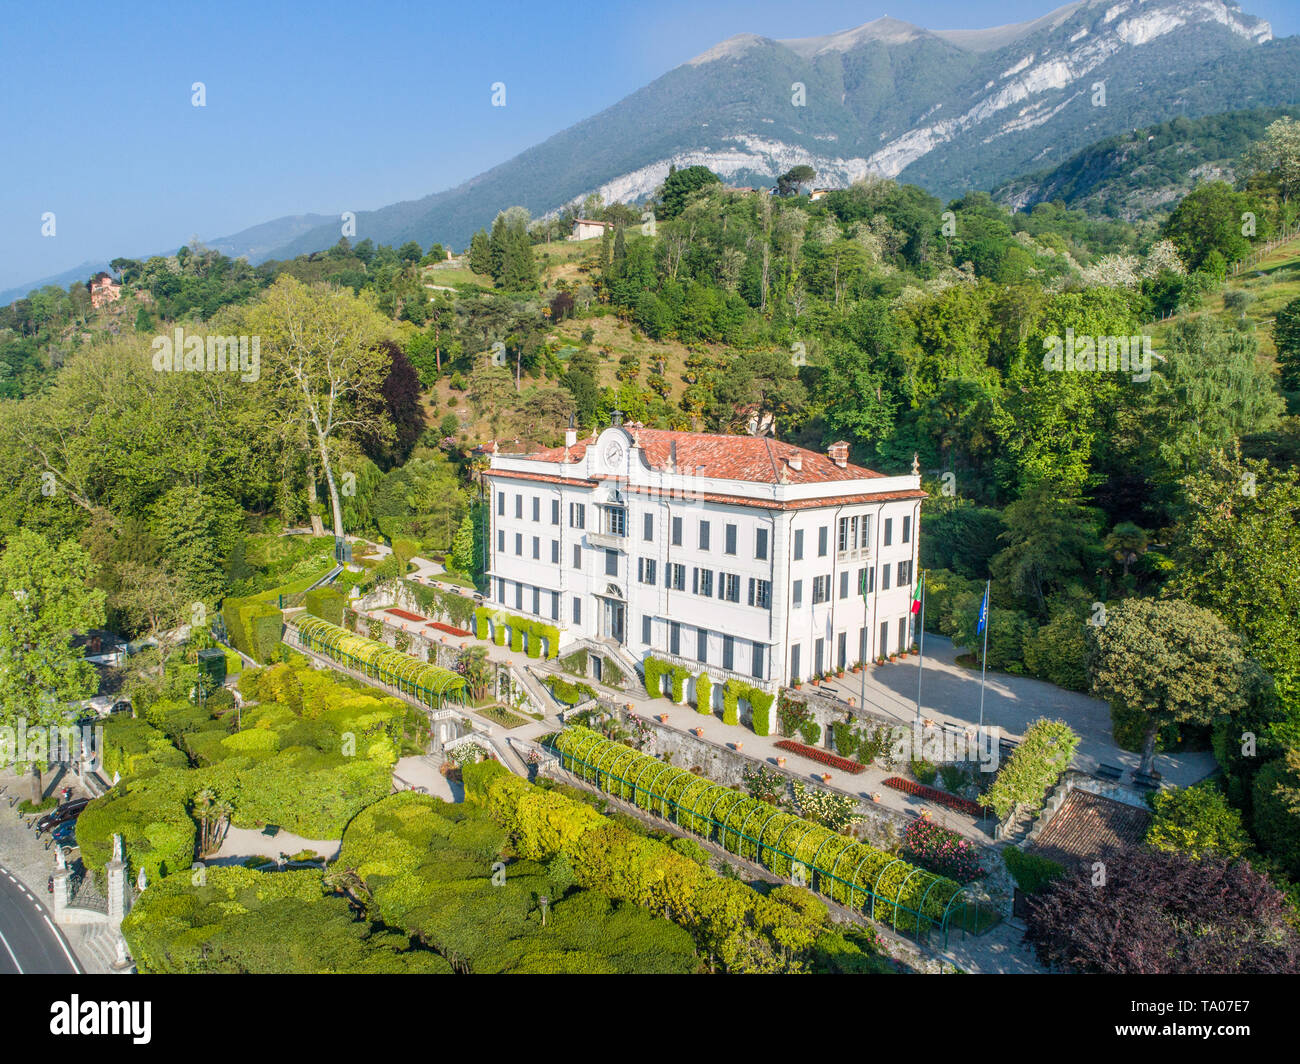 Villa Carlotta, lake of Como. Italy Stock Photo